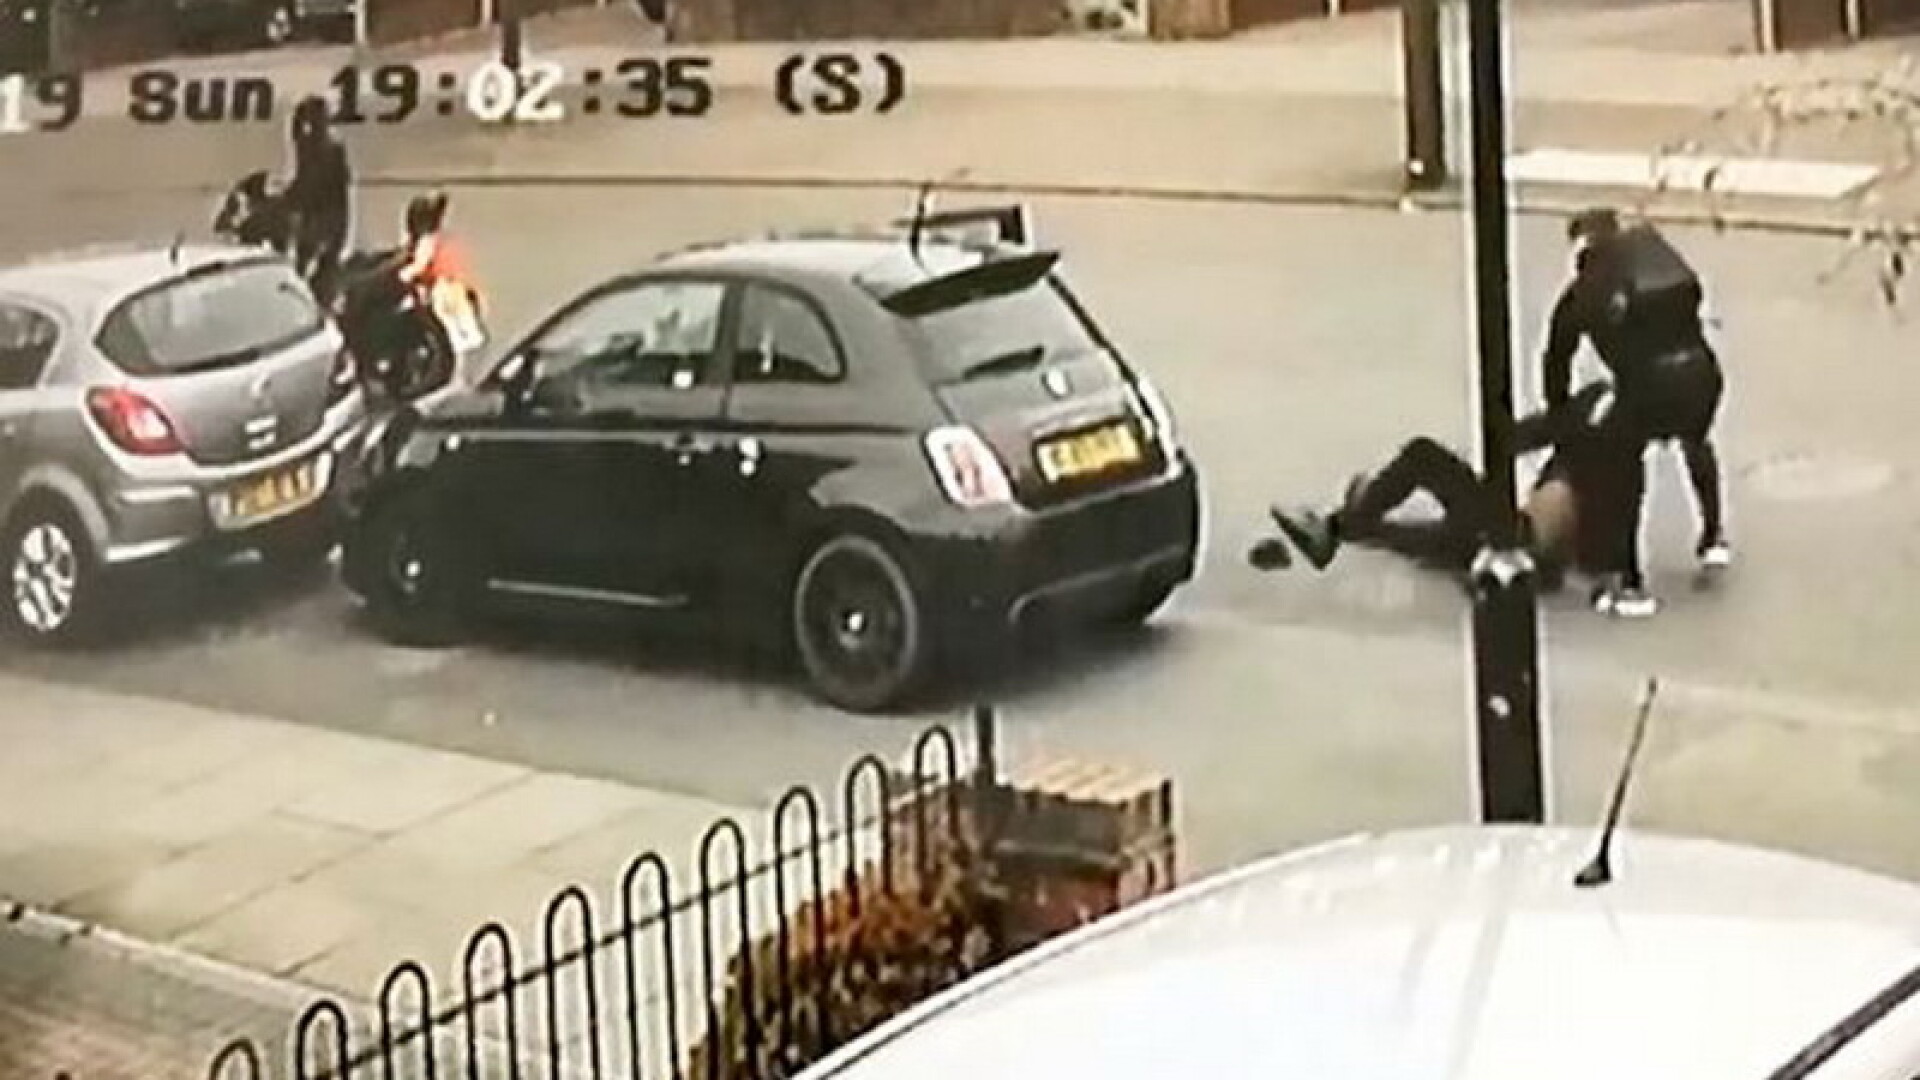 Hoț de mașini, înarmat, pus pe fugă de proprietarul mașinii